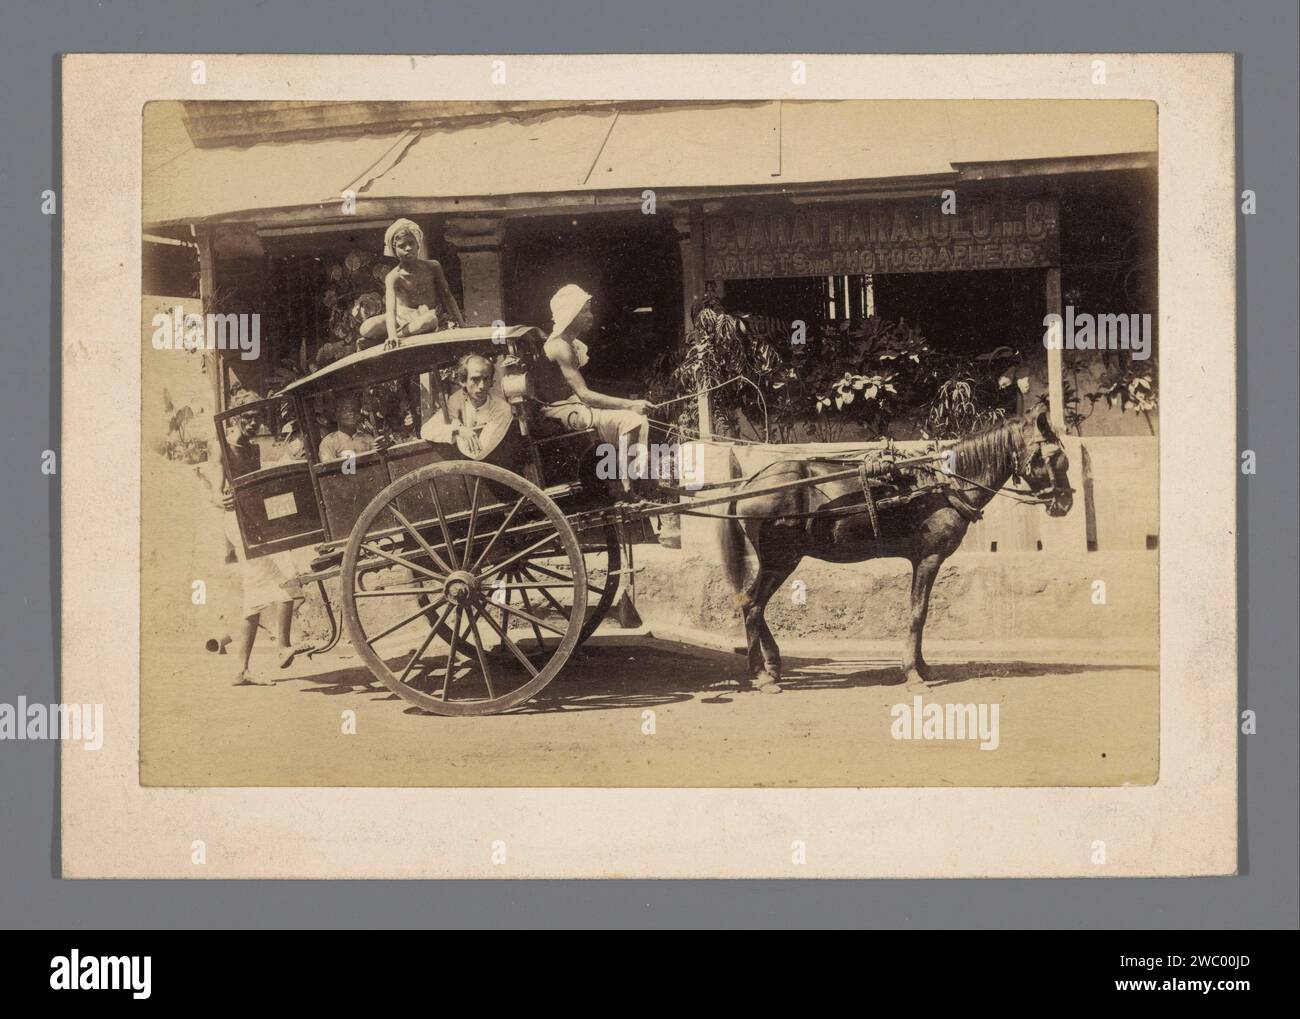 Ein Wagen durch das Fotostudio von C. Varatharajulu und Co. (In Chennai?), Tamil Nadu, Indien, C. Varatharajulu und Co. (Möglicherweise), 1860–1890 Foto nach einem Foto von Monsieur Sorg, das Fotostudio von Varatharajulu befindet sich in Madras. Chennai ist der heutige Name von Madras, aber Madras kann auch die Madras-Provinz, einschließlich Südindien, beziehen. Britisch-indische Zeitung. Zweirädriges Fahrzeug aus Karton mit Albumendruck, das von einem Tier gezogen wird. studio  Fotograf British India Stockfoto